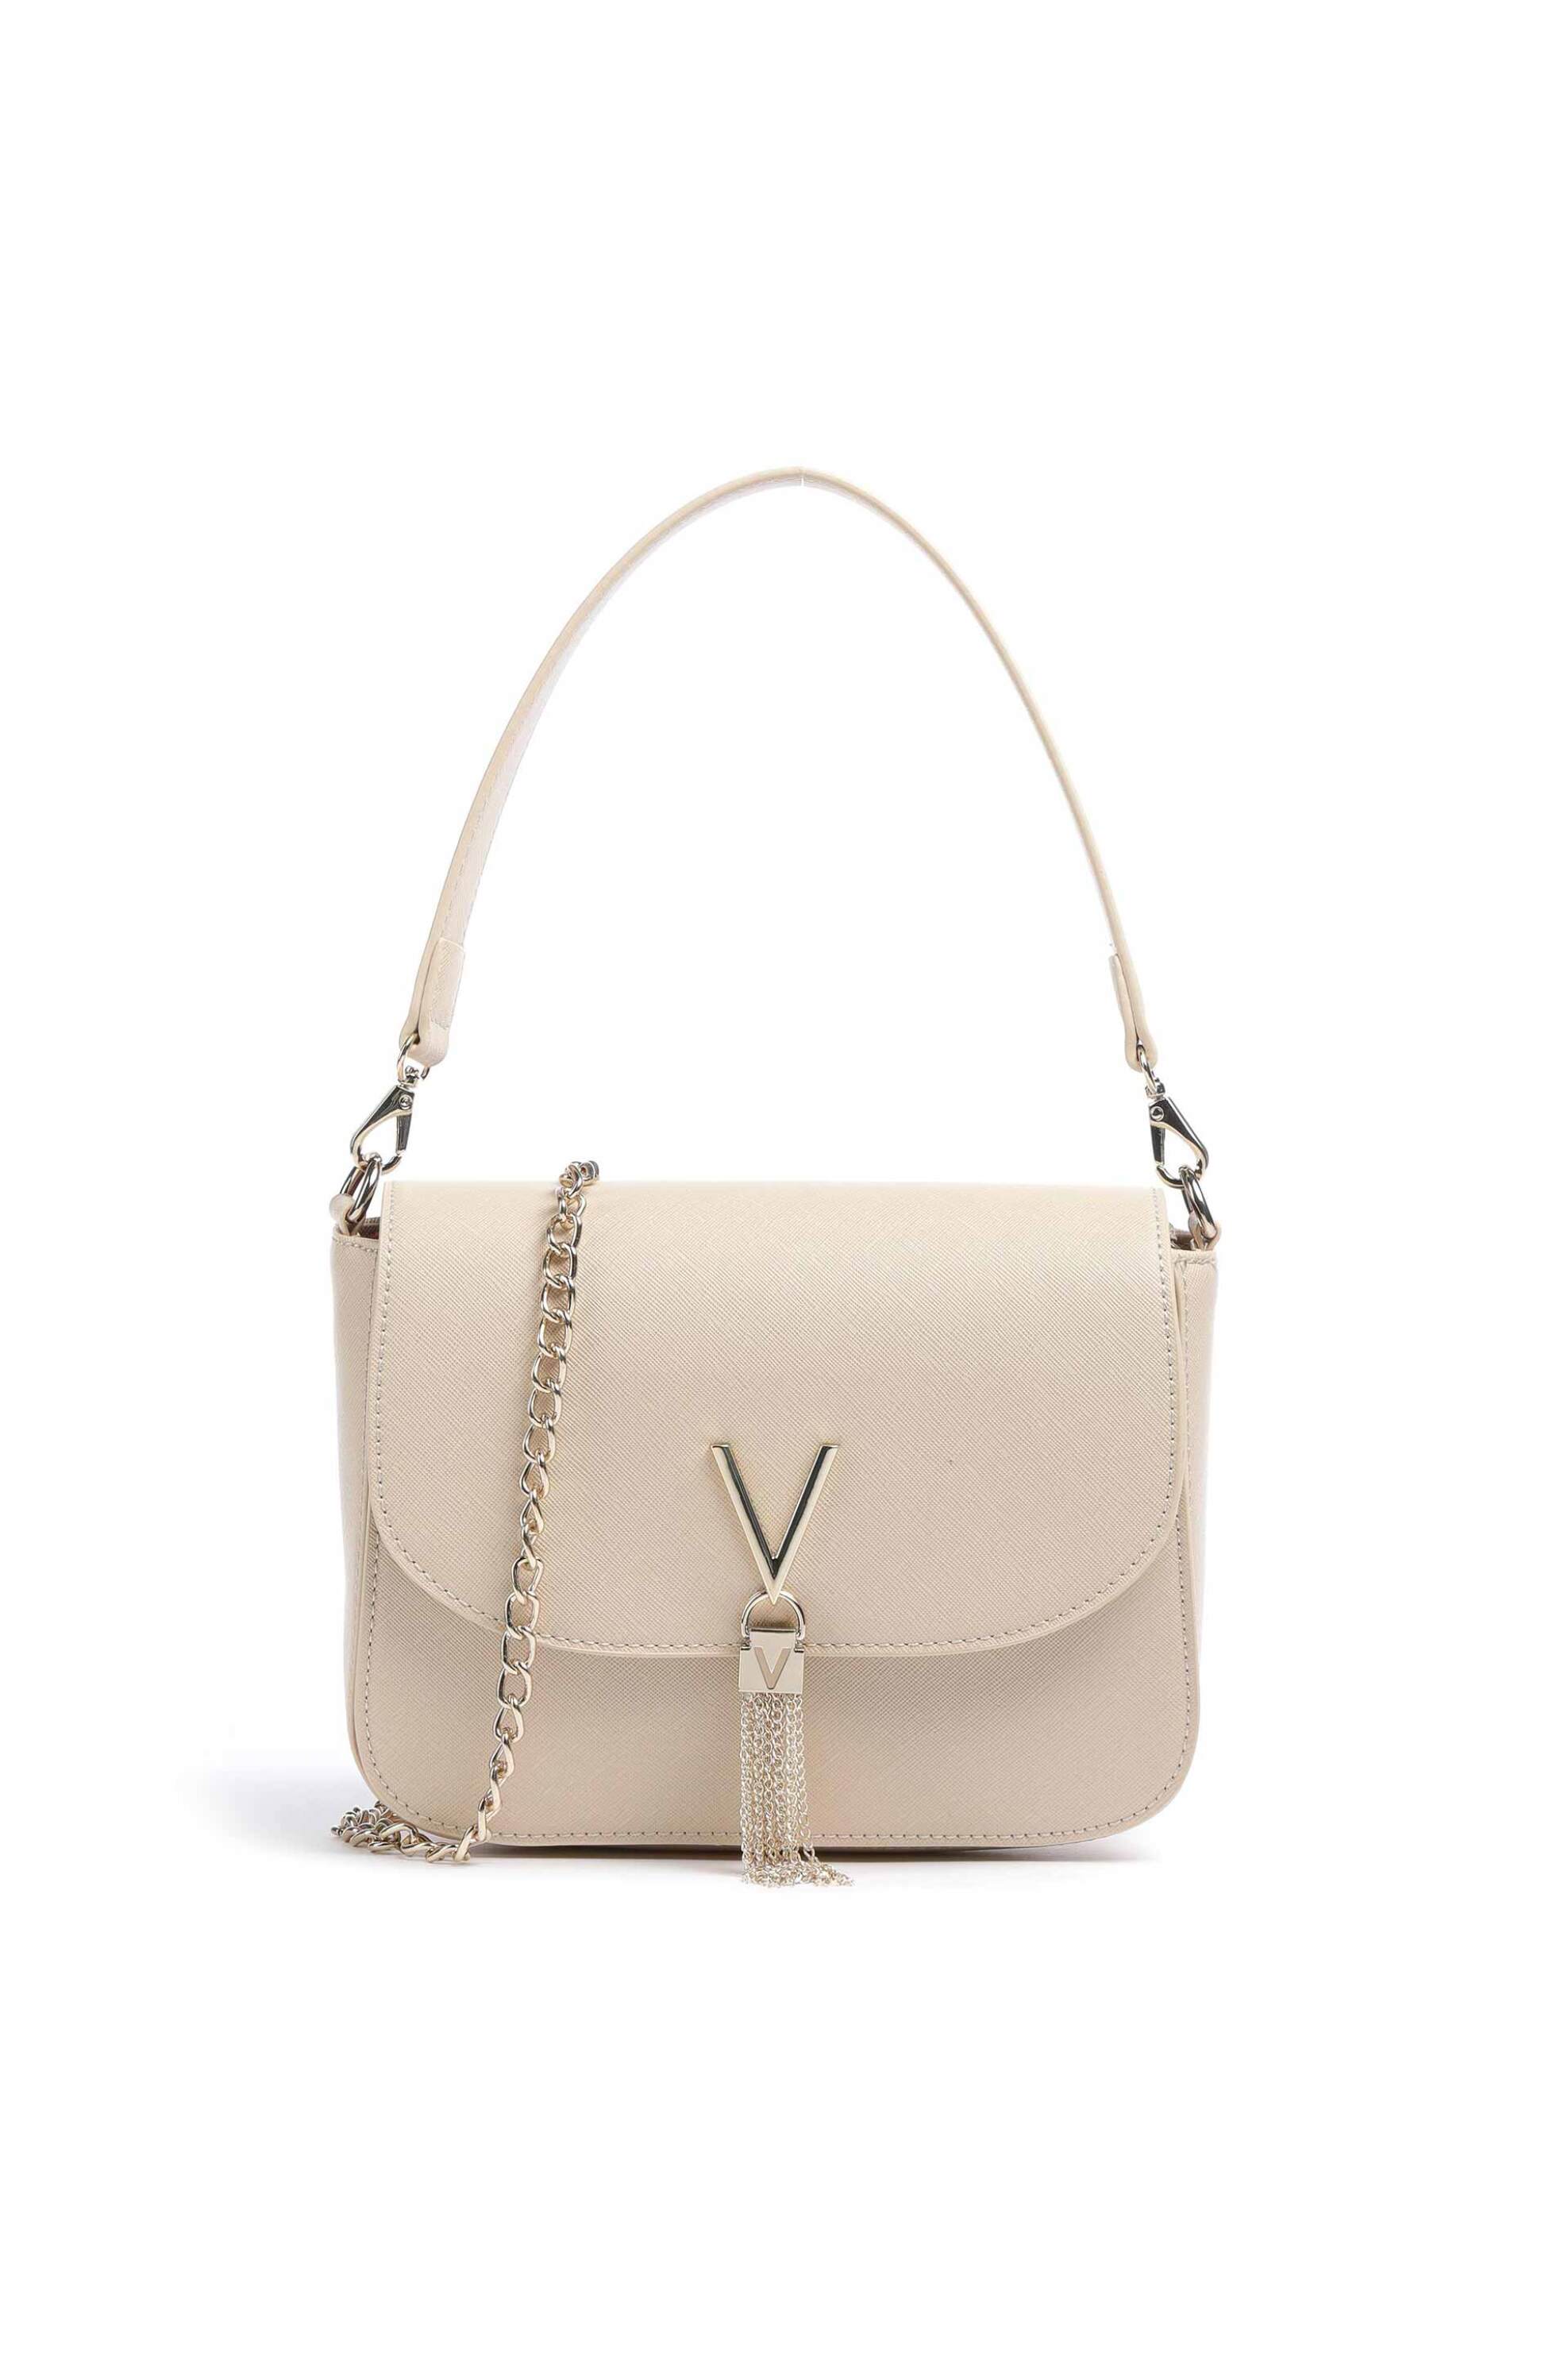 Γυναίκα > ΤΣΑΝΤΕΣ > Τσάντες Ώμου & Shopper Bags Valentino γυναικεία τσάντα ώμου μονόχρωμη με μεταλλικές λεπτομέρειες "Divina Sa" - 55KVBS1IJ04/DIV Εκρού